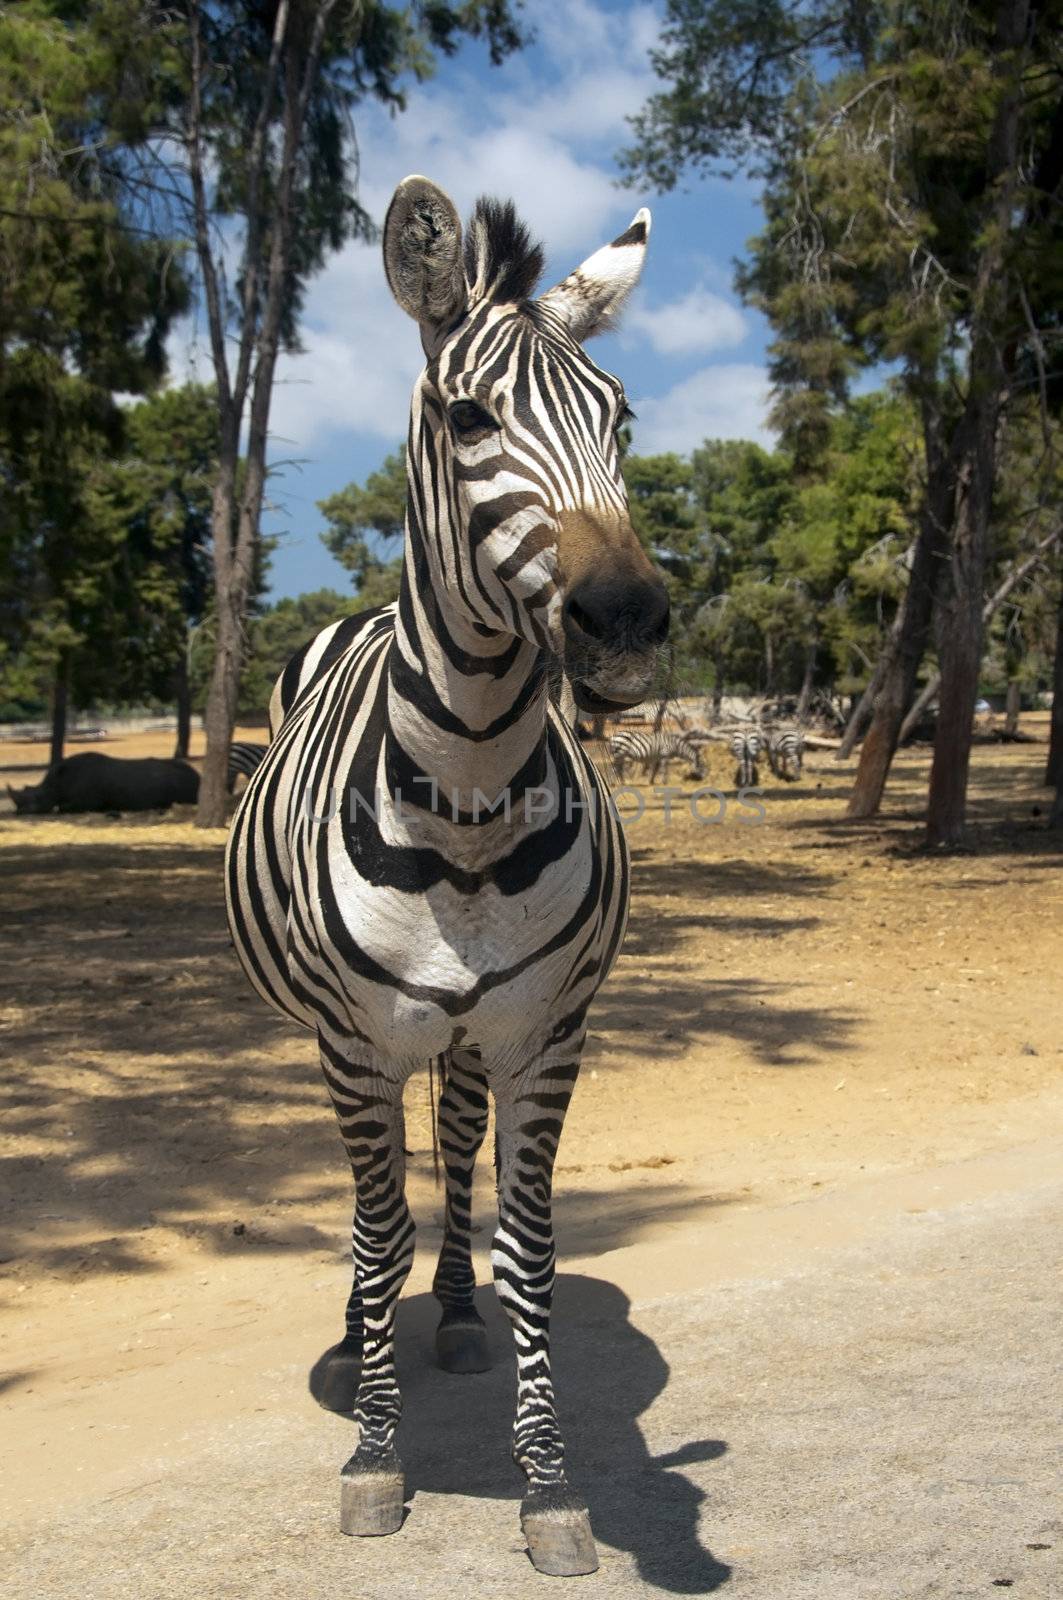 curious zebra by irisphoto4